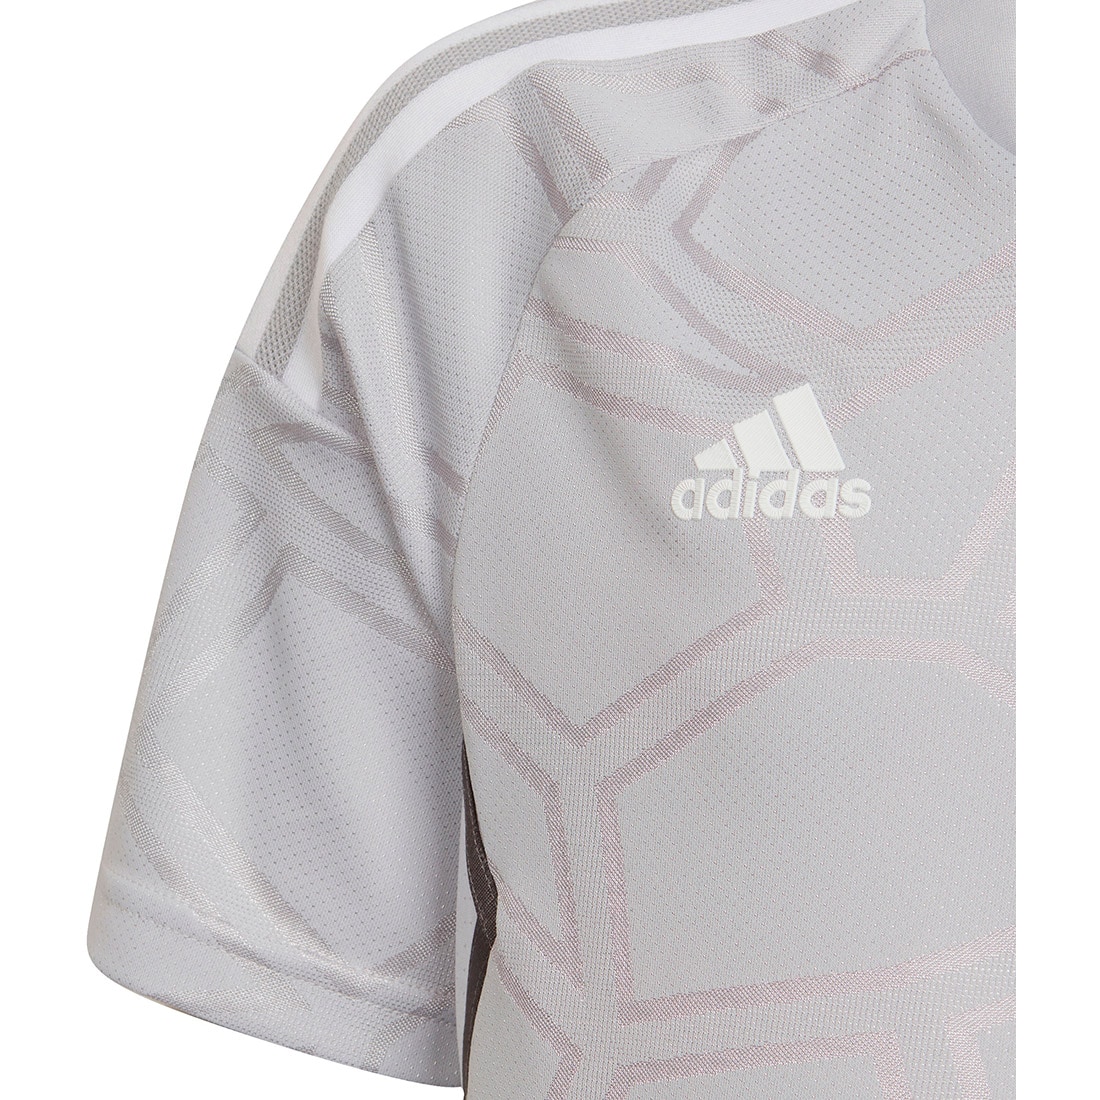 Adidas Kinder Trikot MD Condivo 22 grau-weiß online kaufen